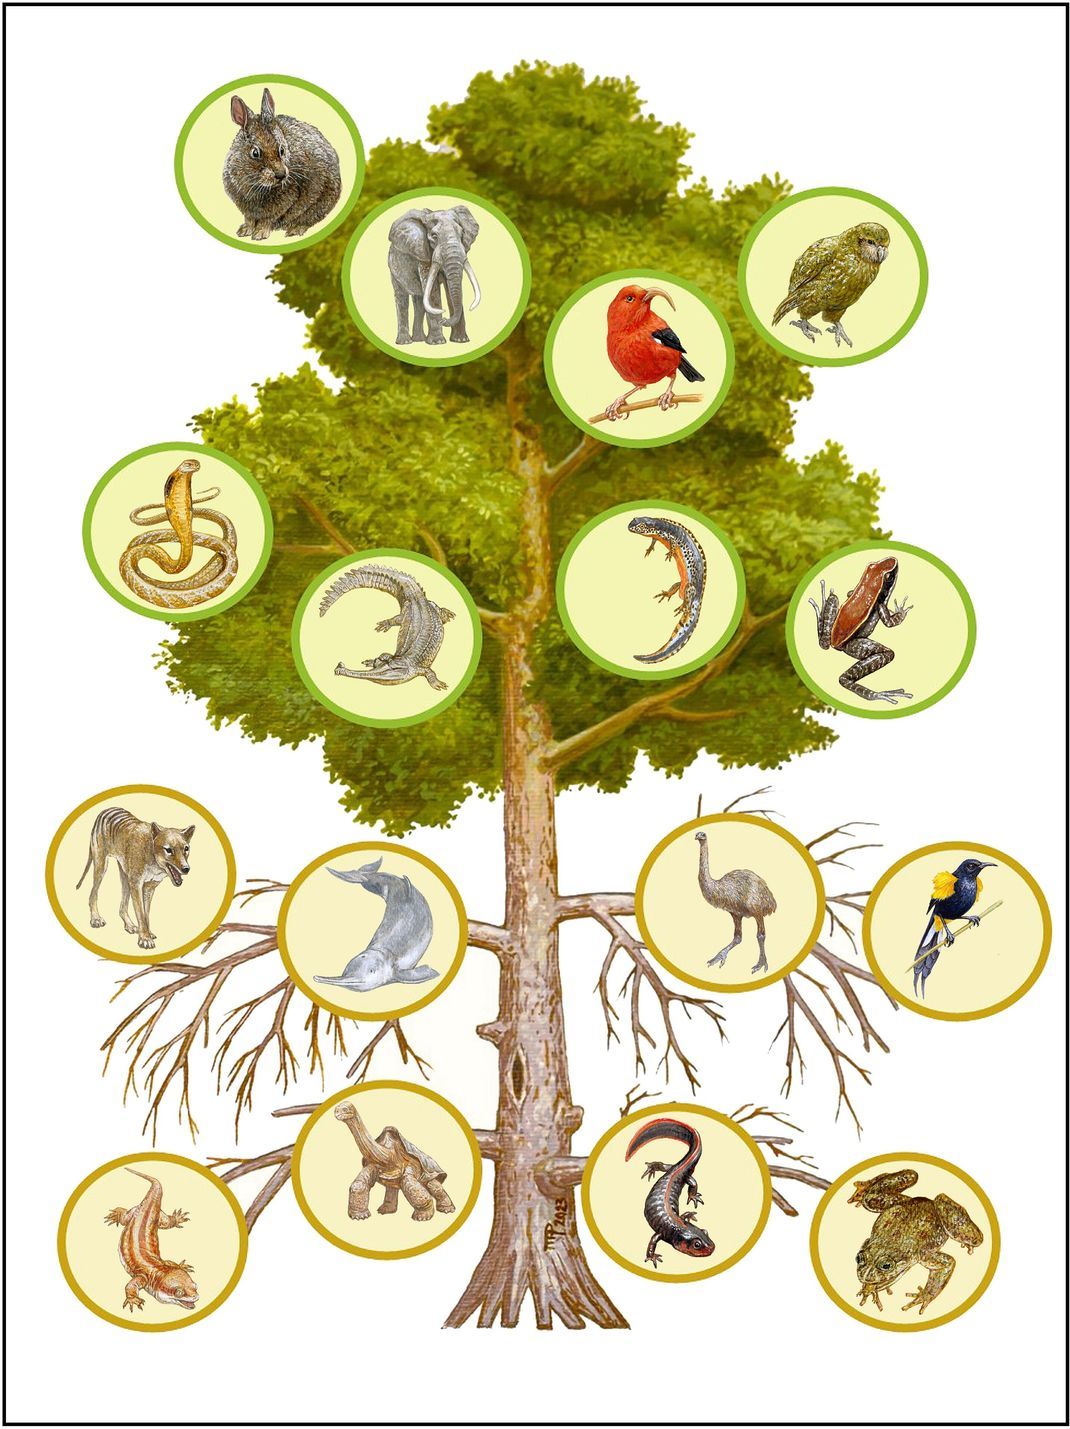 "Mutilation of the tree of life via mass extinction of animal genera" - Die "Verstümmelung des Lebensbaums" durch Massensterben.